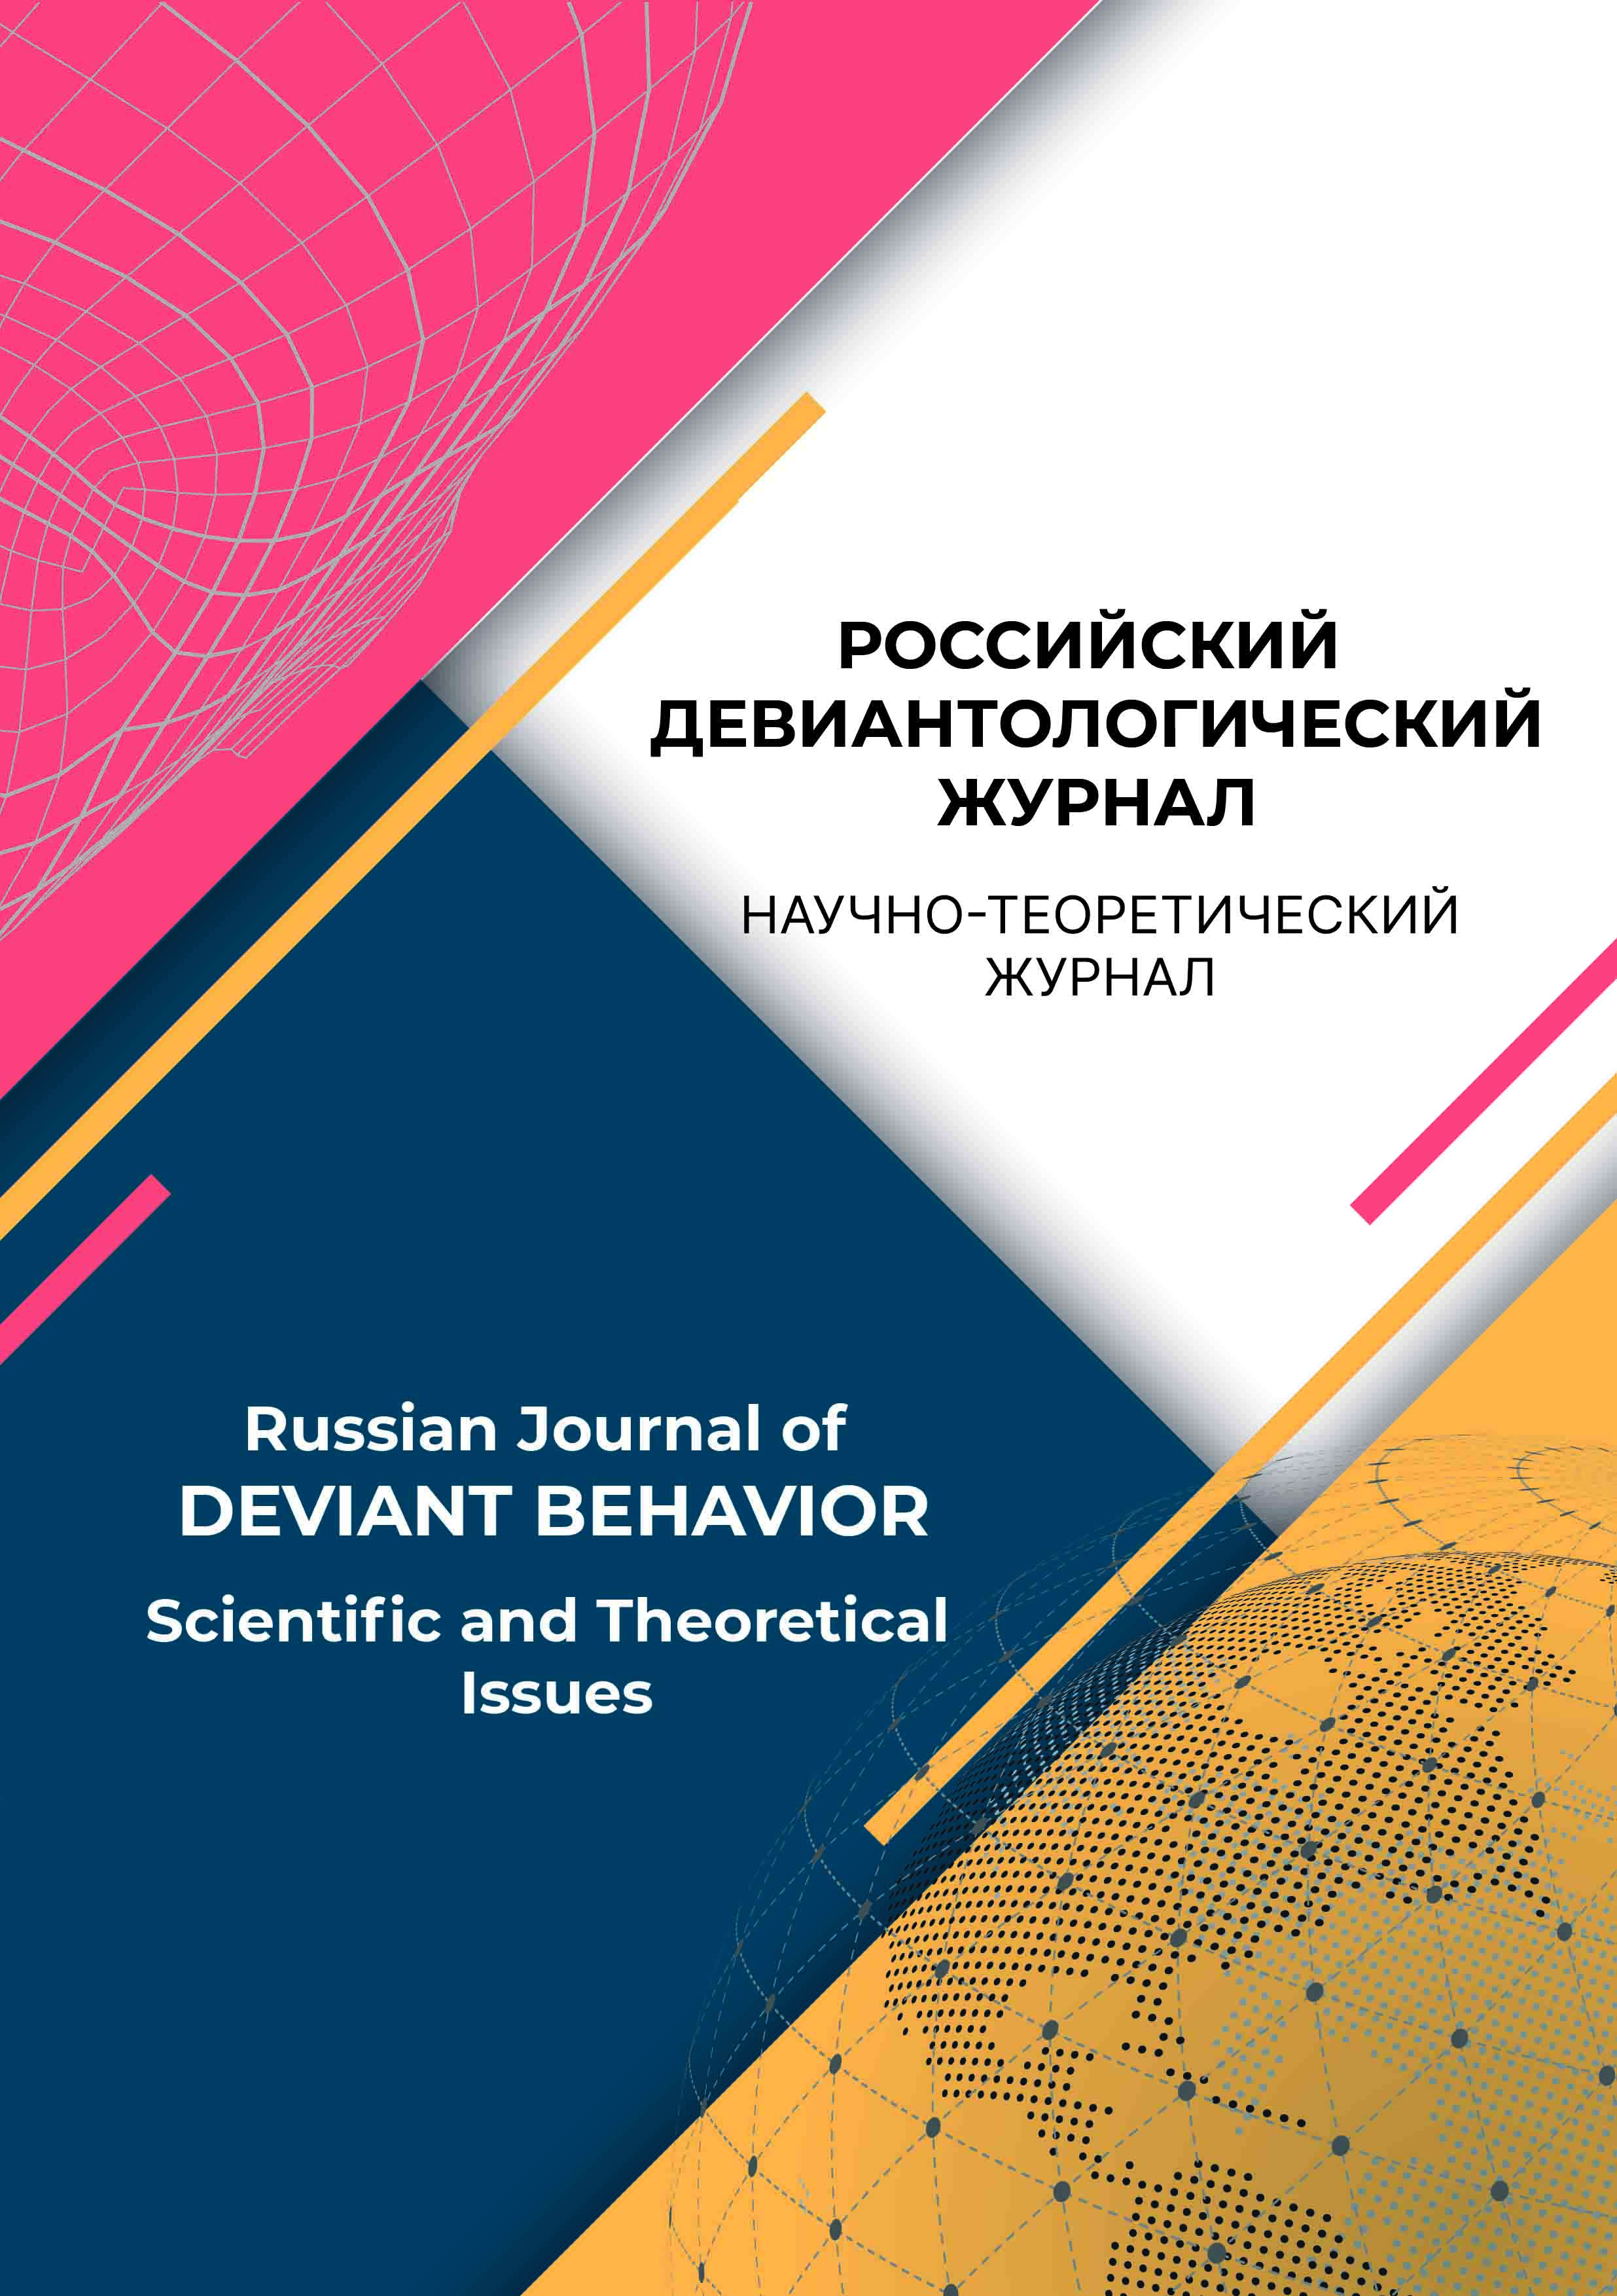                         Russian Journal of Deviant Behavior
            